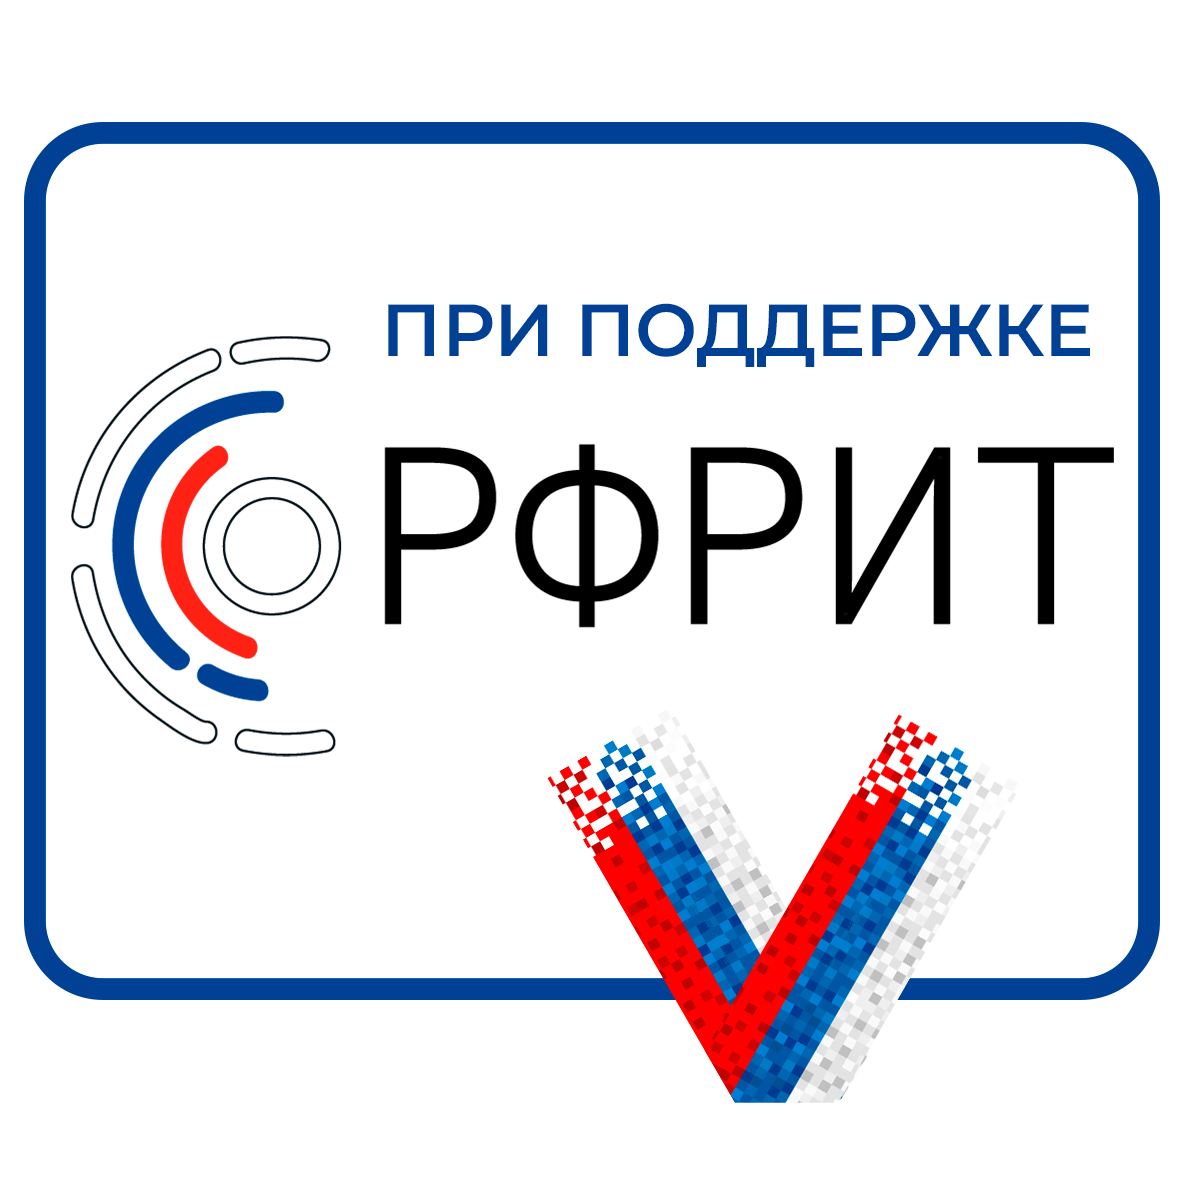 Российский фонд развития информационных технологий